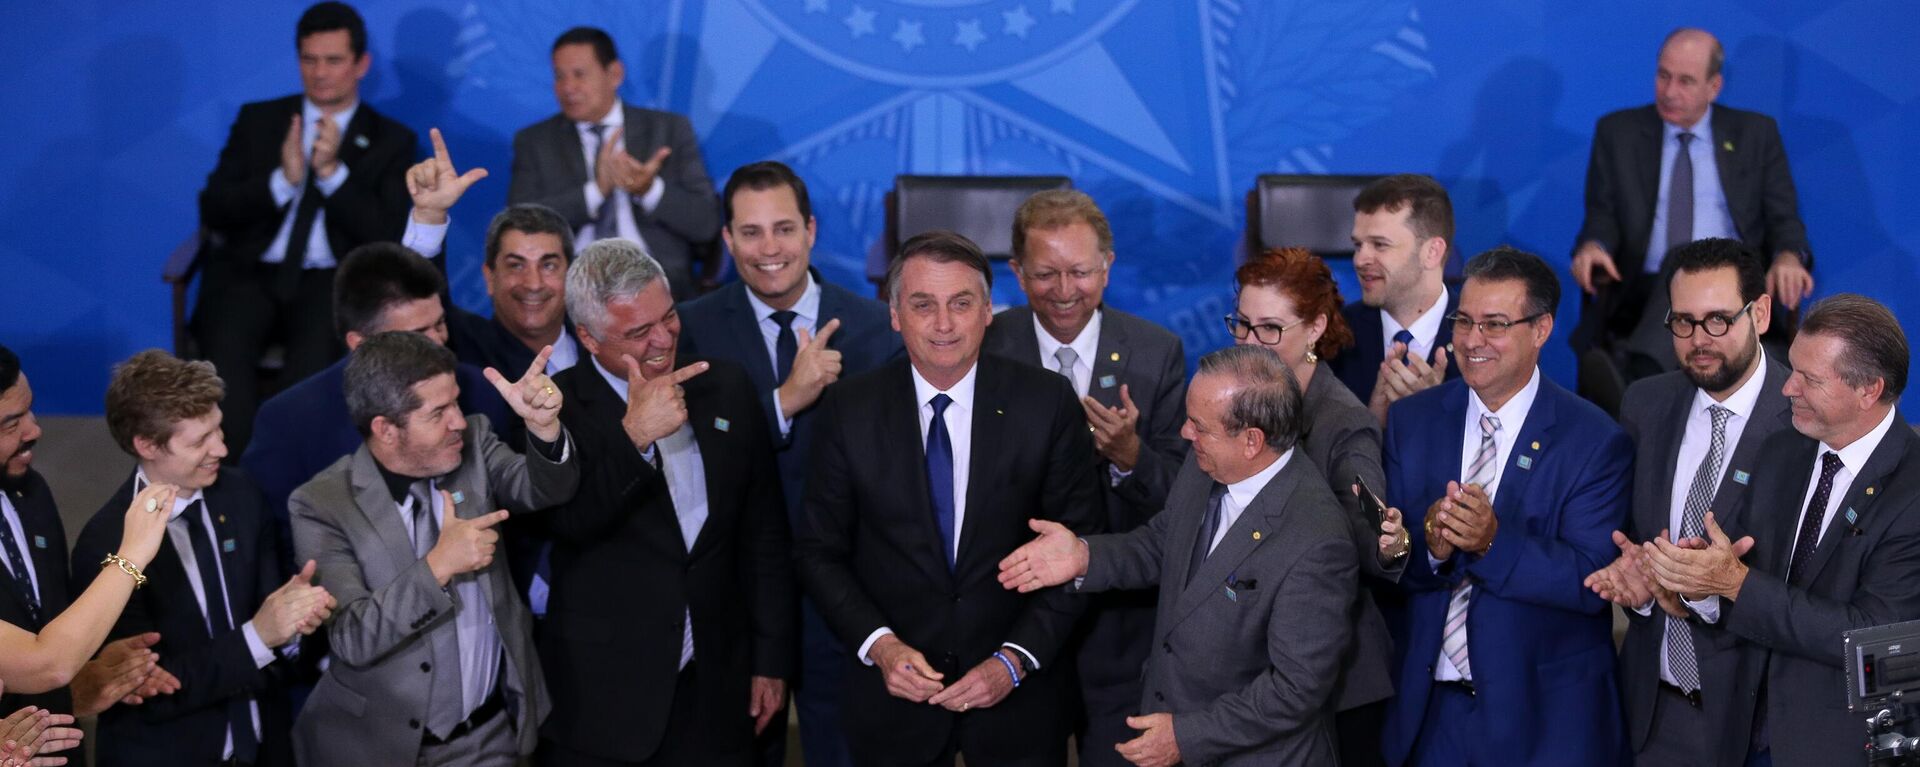 O presidente brasileiro, Jair Bolsonaro (PL), acompanhado de deputados favoráveis a projetos de flexibilização do controle de armas, durante assinatura de decreto presidencial que flexibiliza regras para colecionadores, atiradores desportivos e caçadores (CACs), em Brasília, em 7 de maio de 2019 - Sputnik Brasil, 1920, 21.06.2022